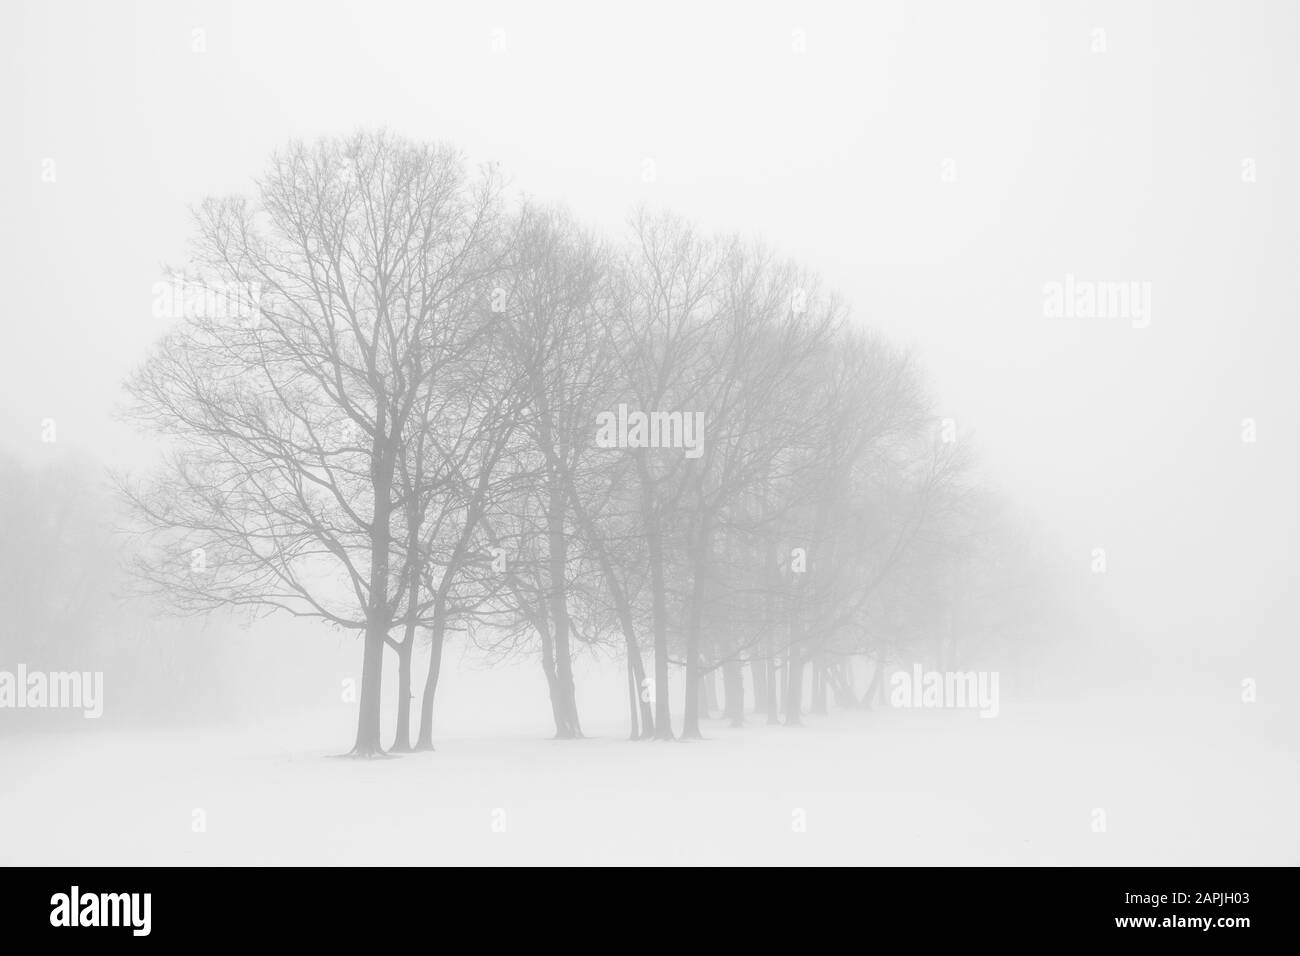 la scène hivernale foggy avec des arbres Banque D'Images